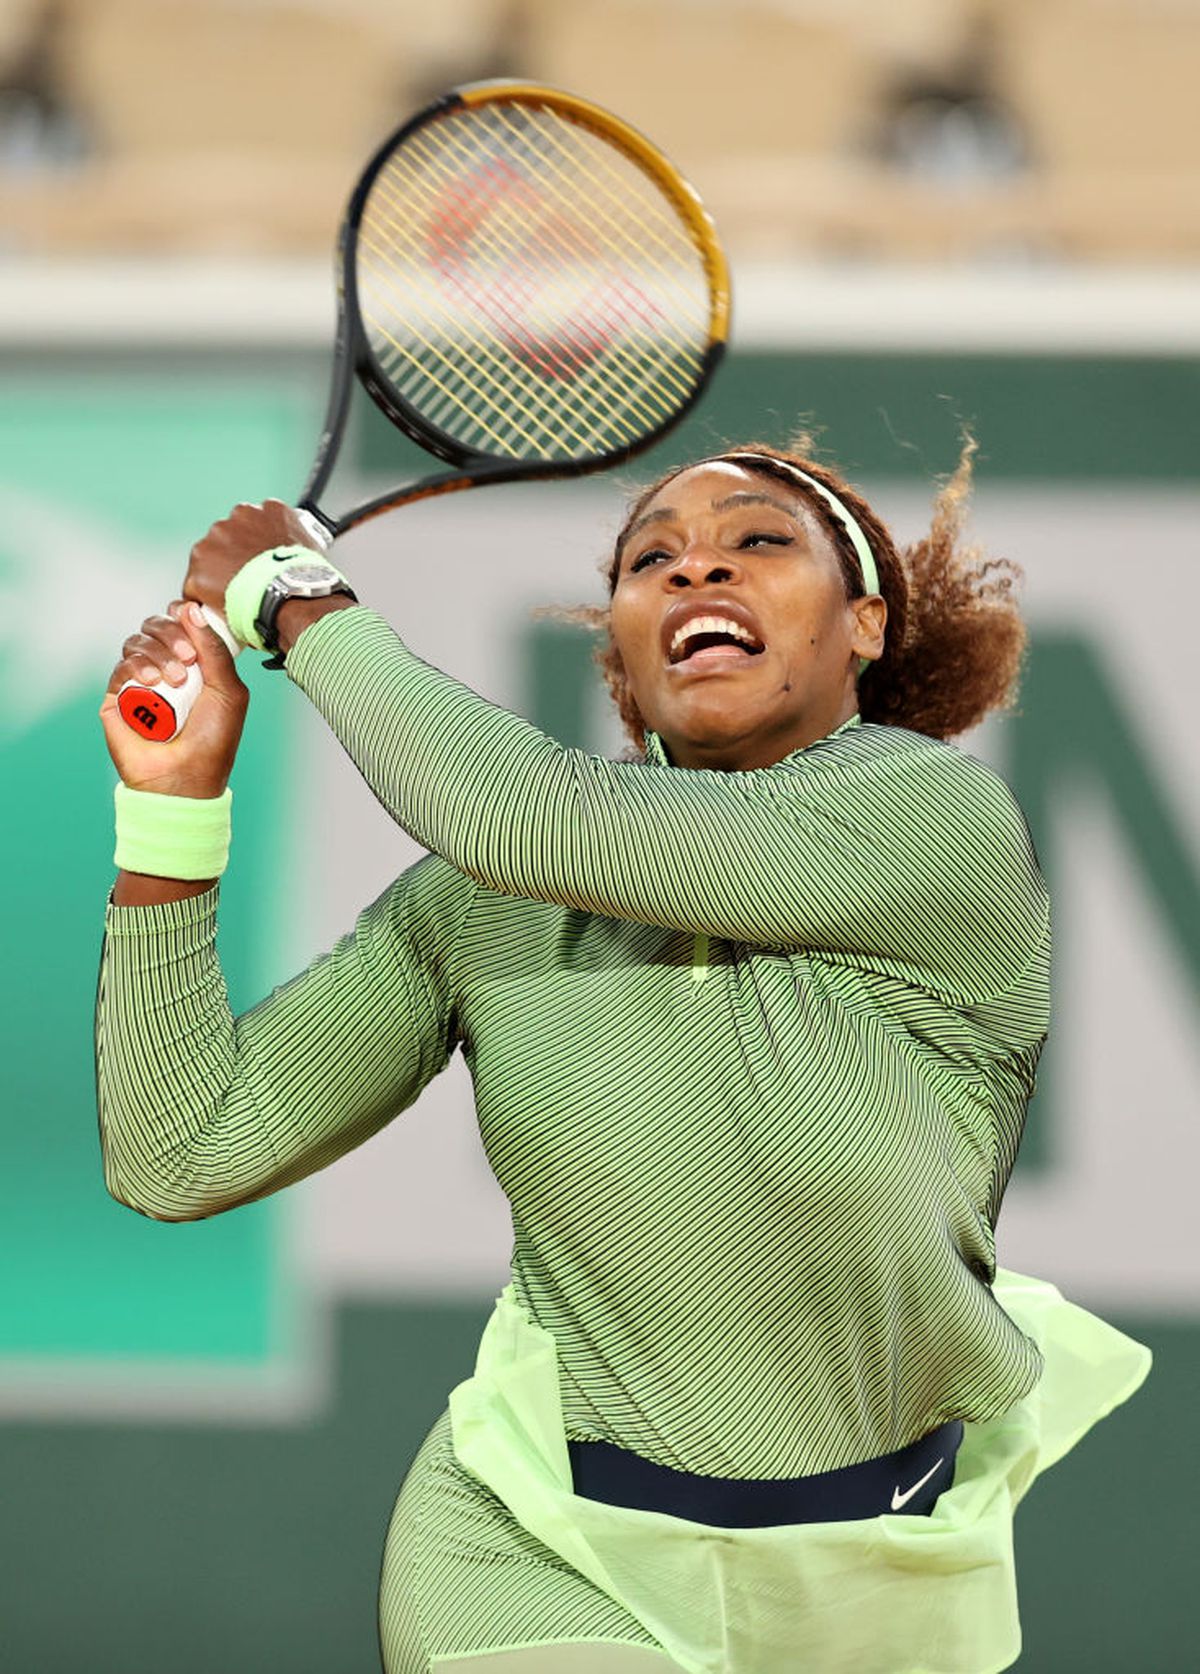 FOTO Serena Williams, echipament îndrăzneț la Paris! Costumul ales de americancă